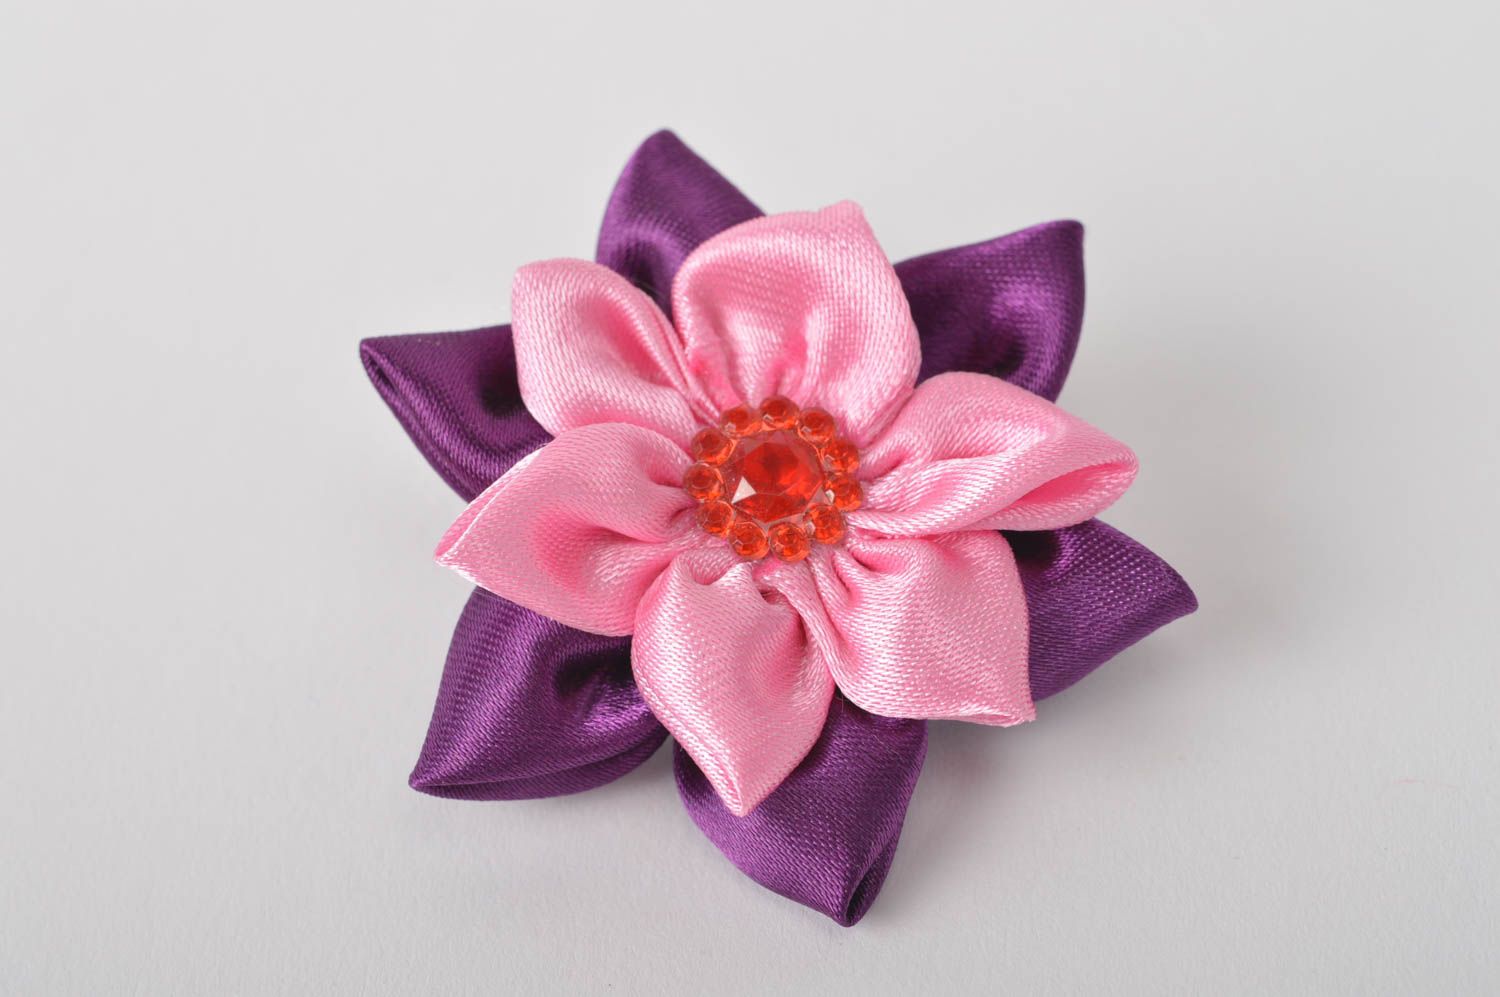 Handmade Mädchen Haarschmuck Haarspange Blume Mode Accessoire schön grell farbig foto 2